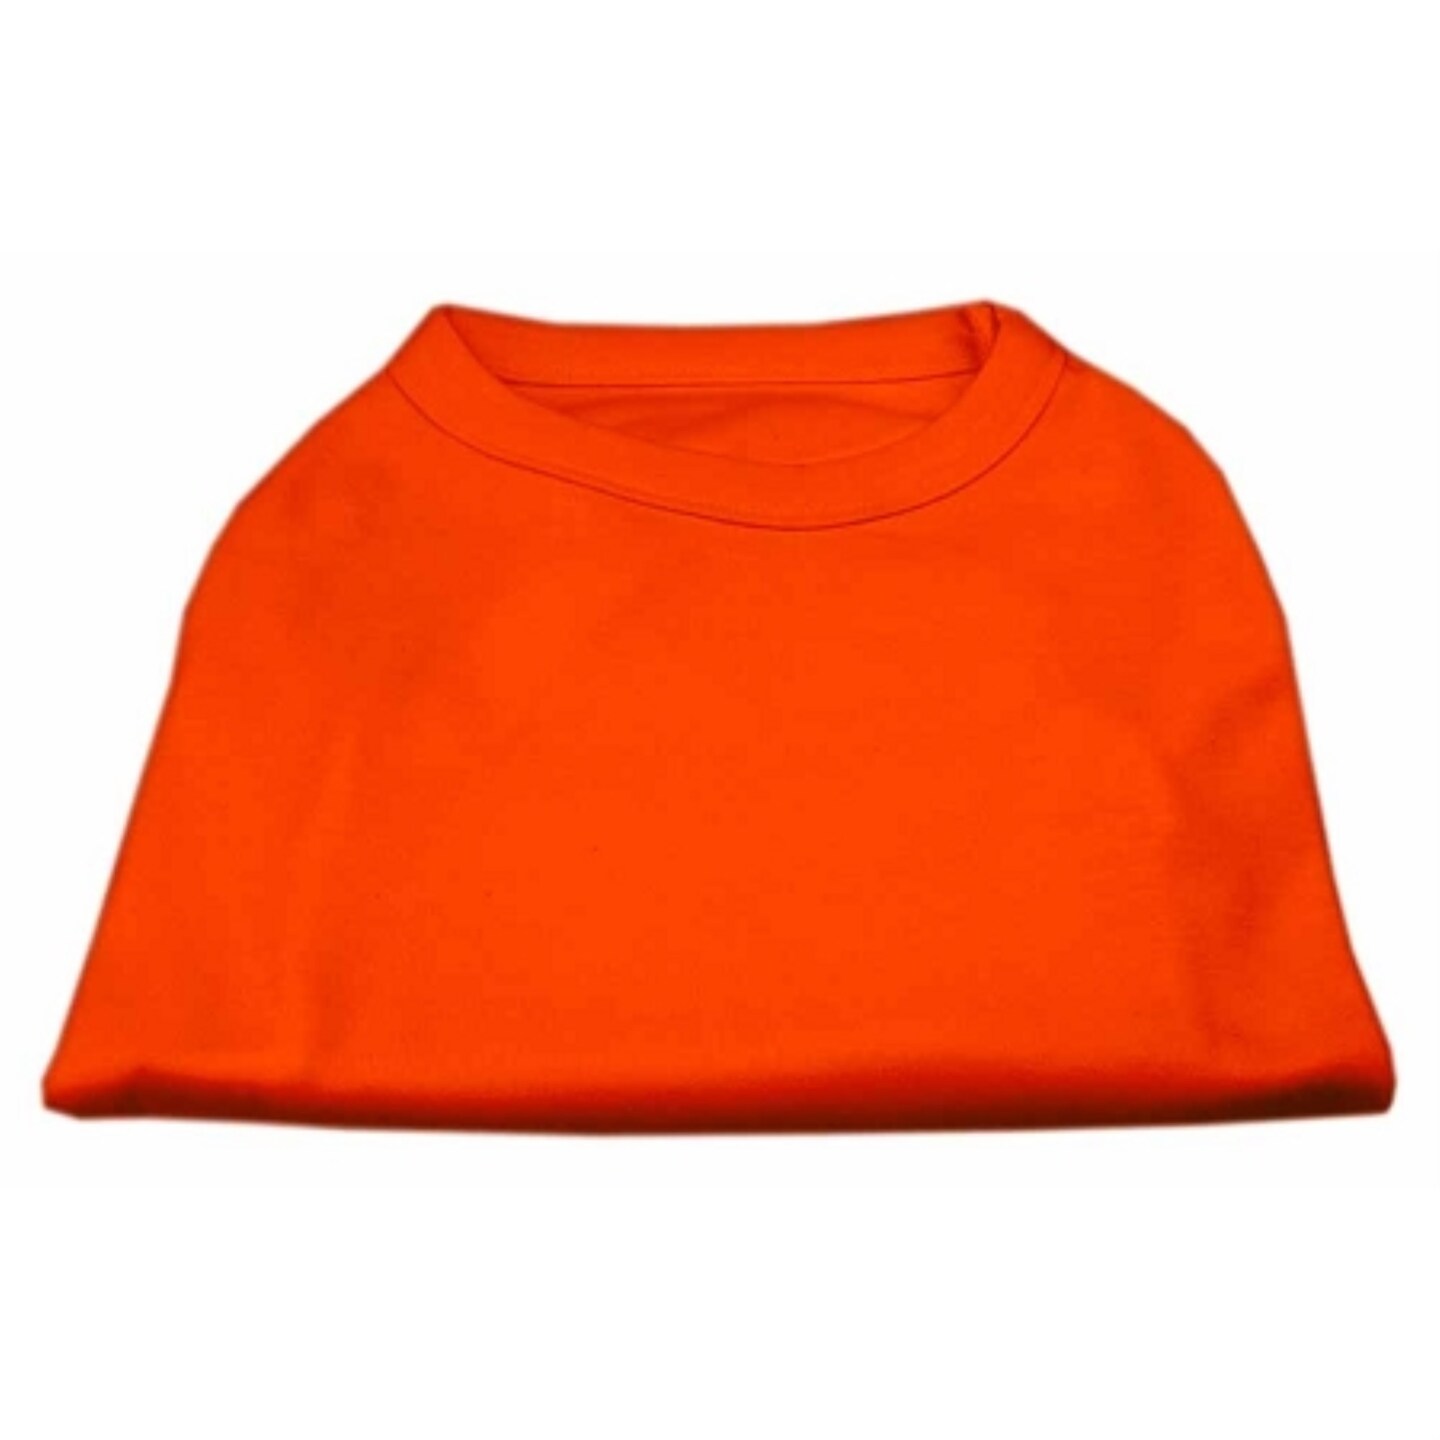 Plain Shirts Orange Lg (14)